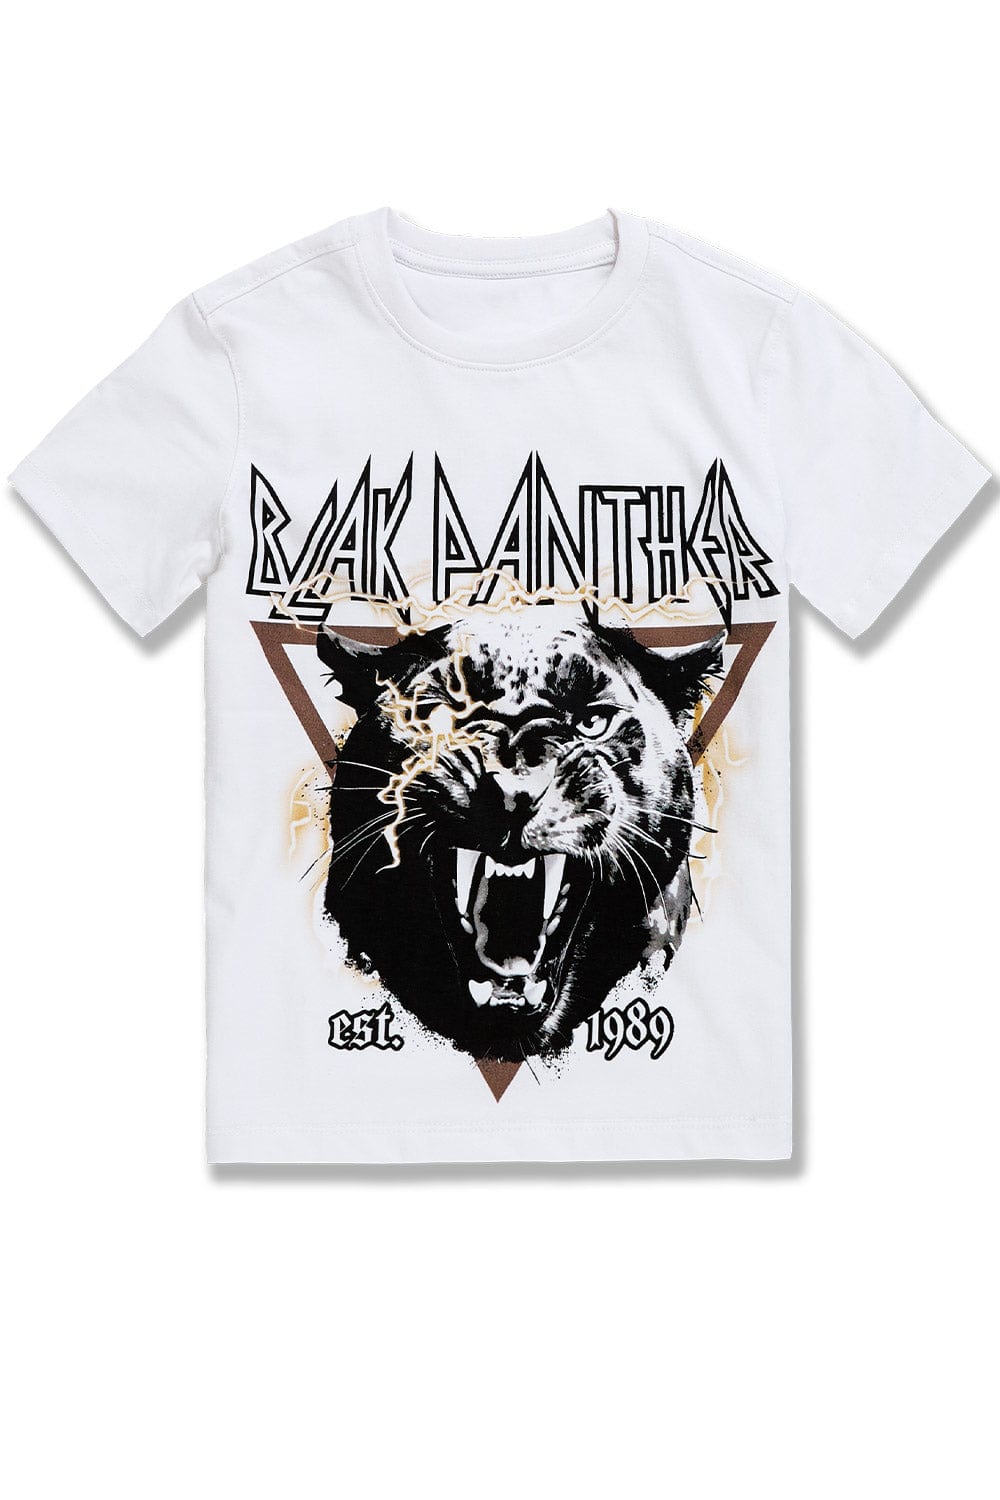 BB Kids Blak Panther T-Shirt (White)